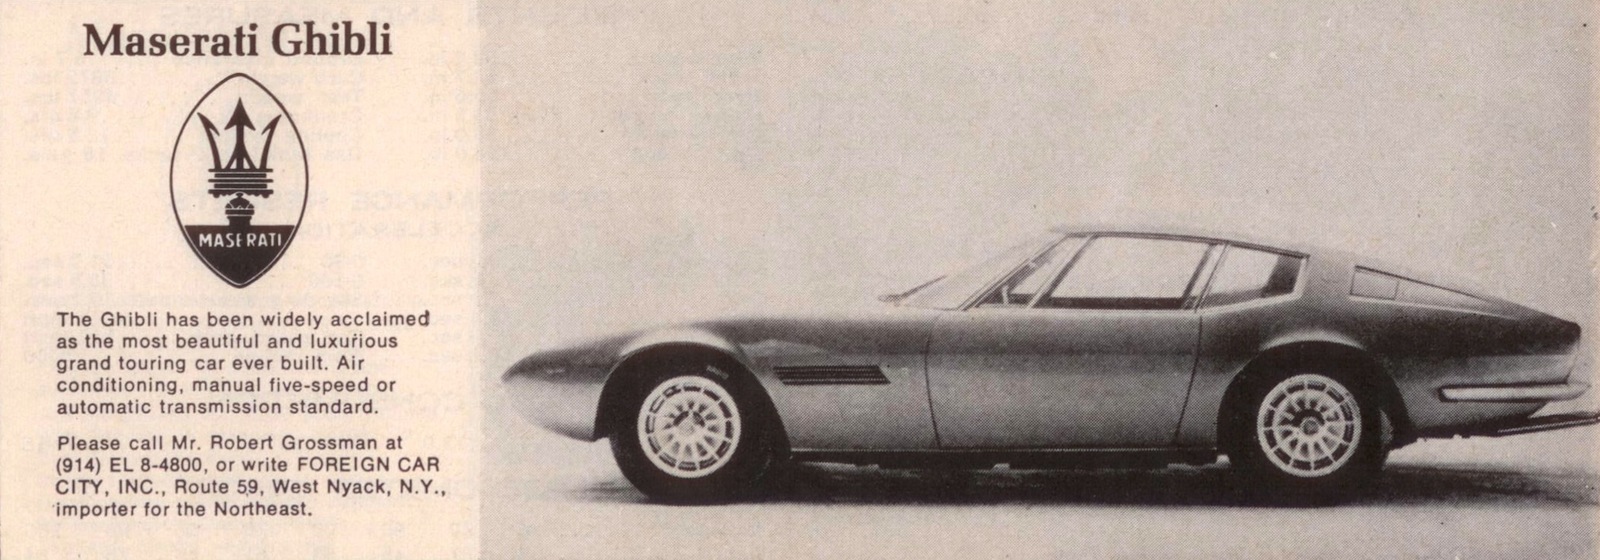 catalogue_maseratighibli Maserati Ghibli: 55 espectaculares años - Semanal Clásico - Revista online de coches clásicos, de colección y sport